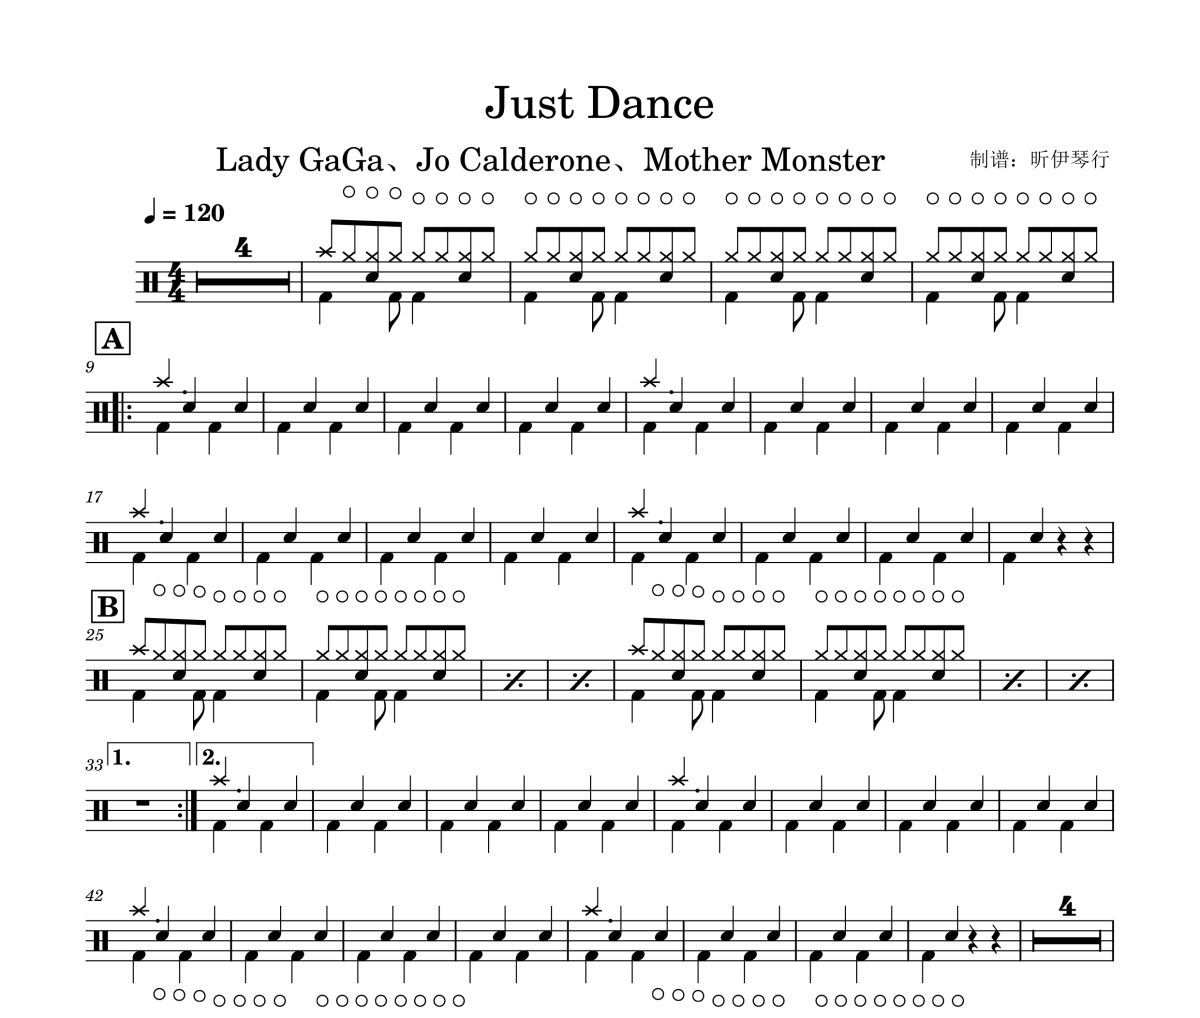 雷蒂嘎嘎 Lady Gaga-Just Dance架子鼓|爵士鼓|鼓谱+动态鼓谱视频